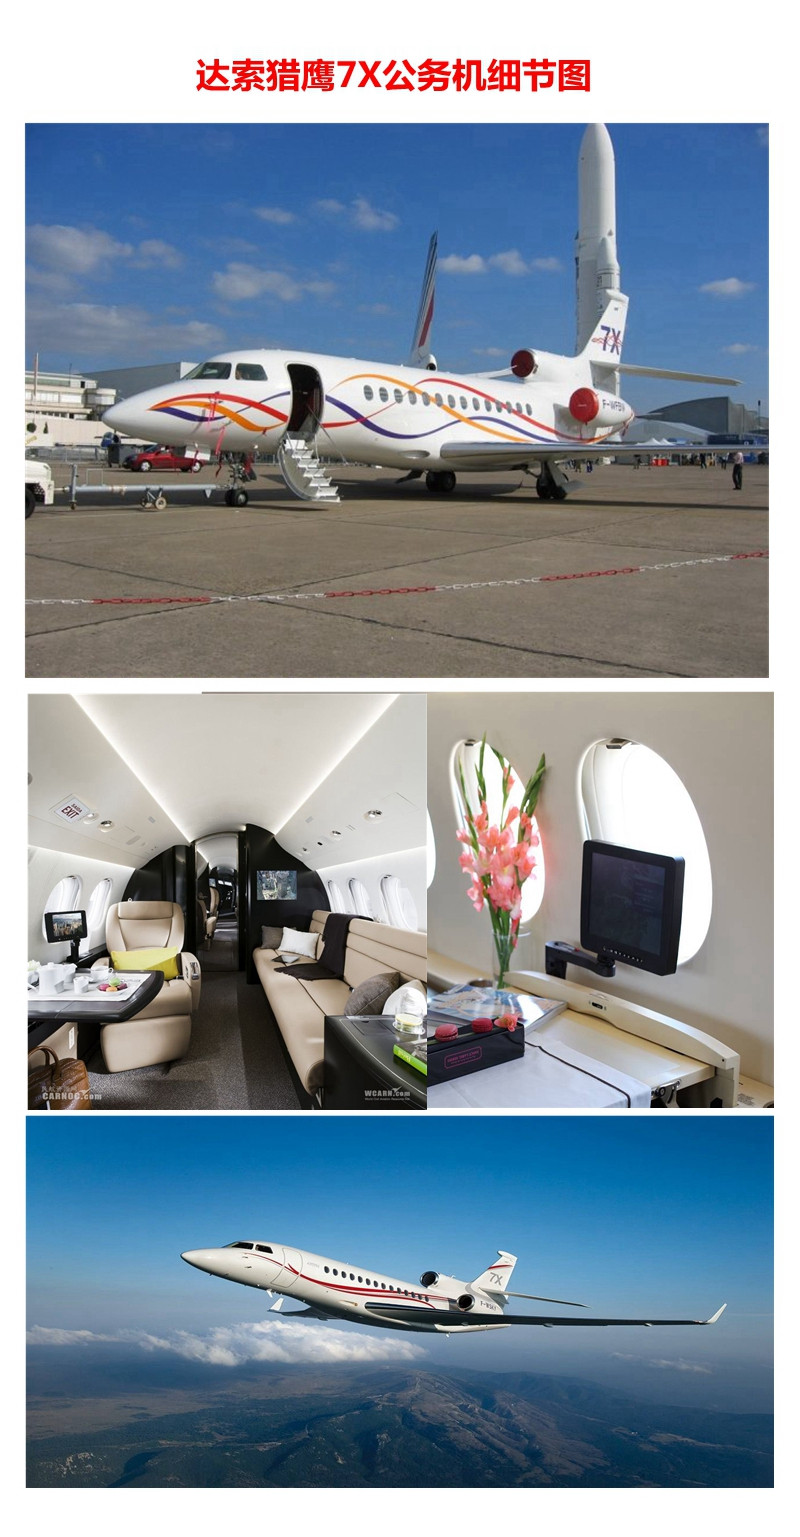 法国达索猎鹰7x私人飞机【服务商:北京环球之翼航空科技有限责任公司